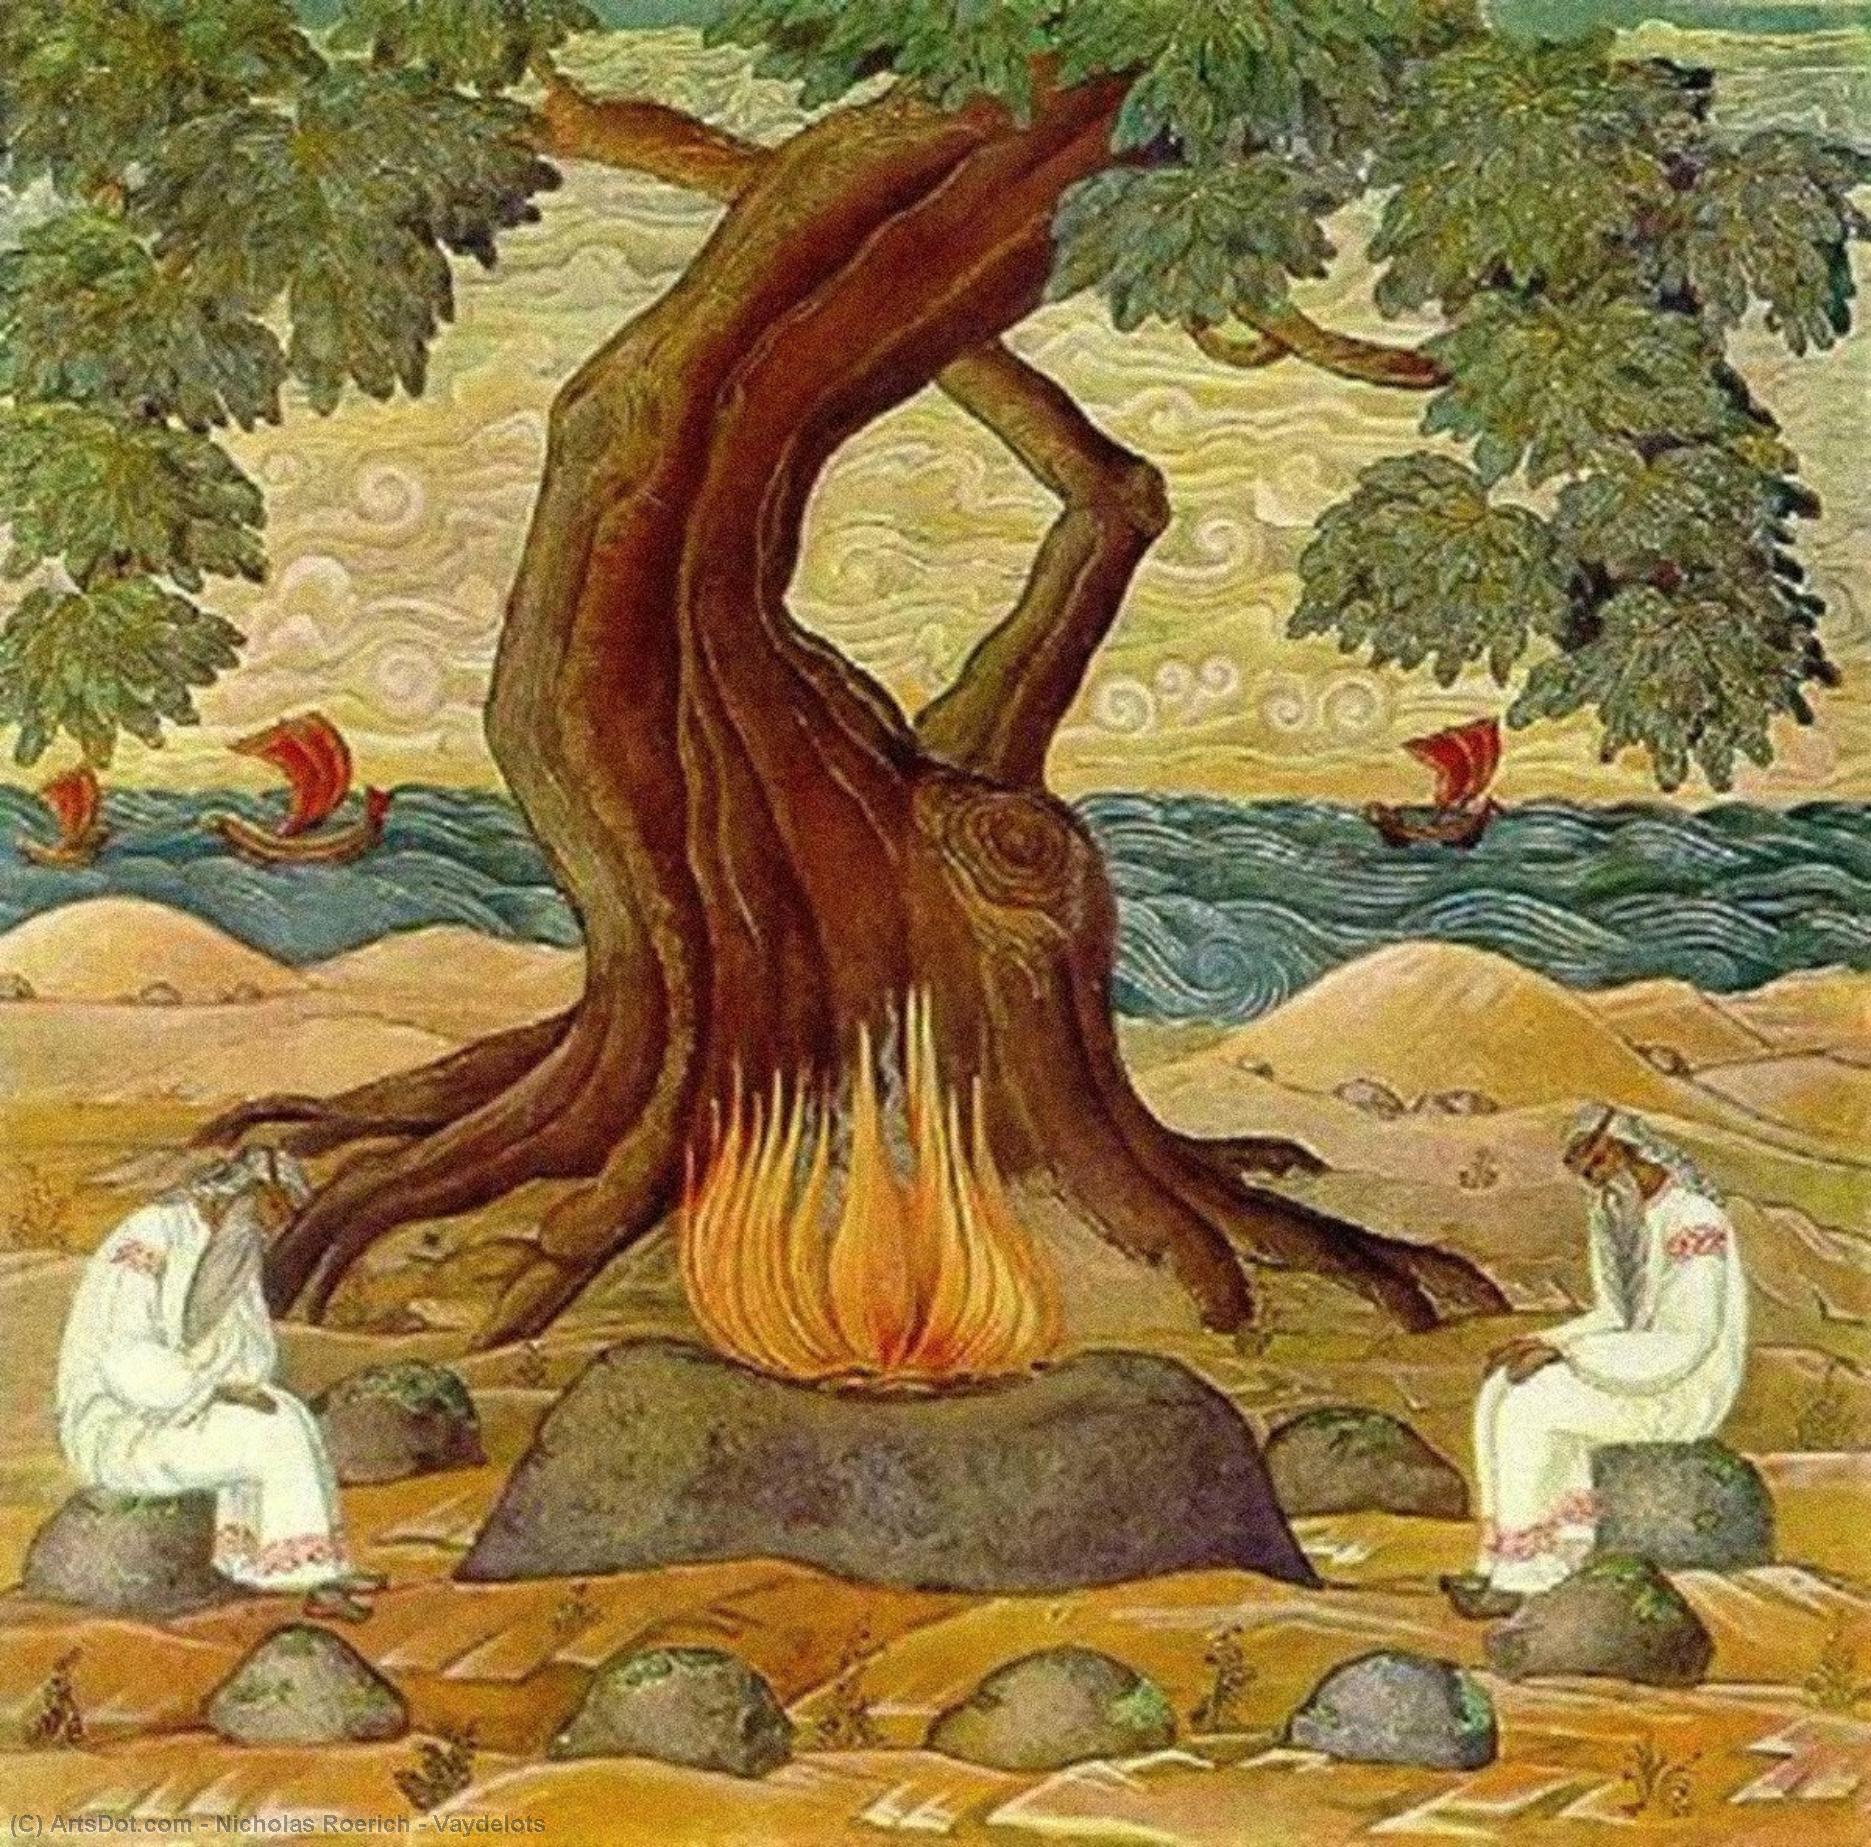 WikiOO.org - Encyclopedia of Fine Arts - Lukisan, Artwork Nicholas Roerich - Vaydelots